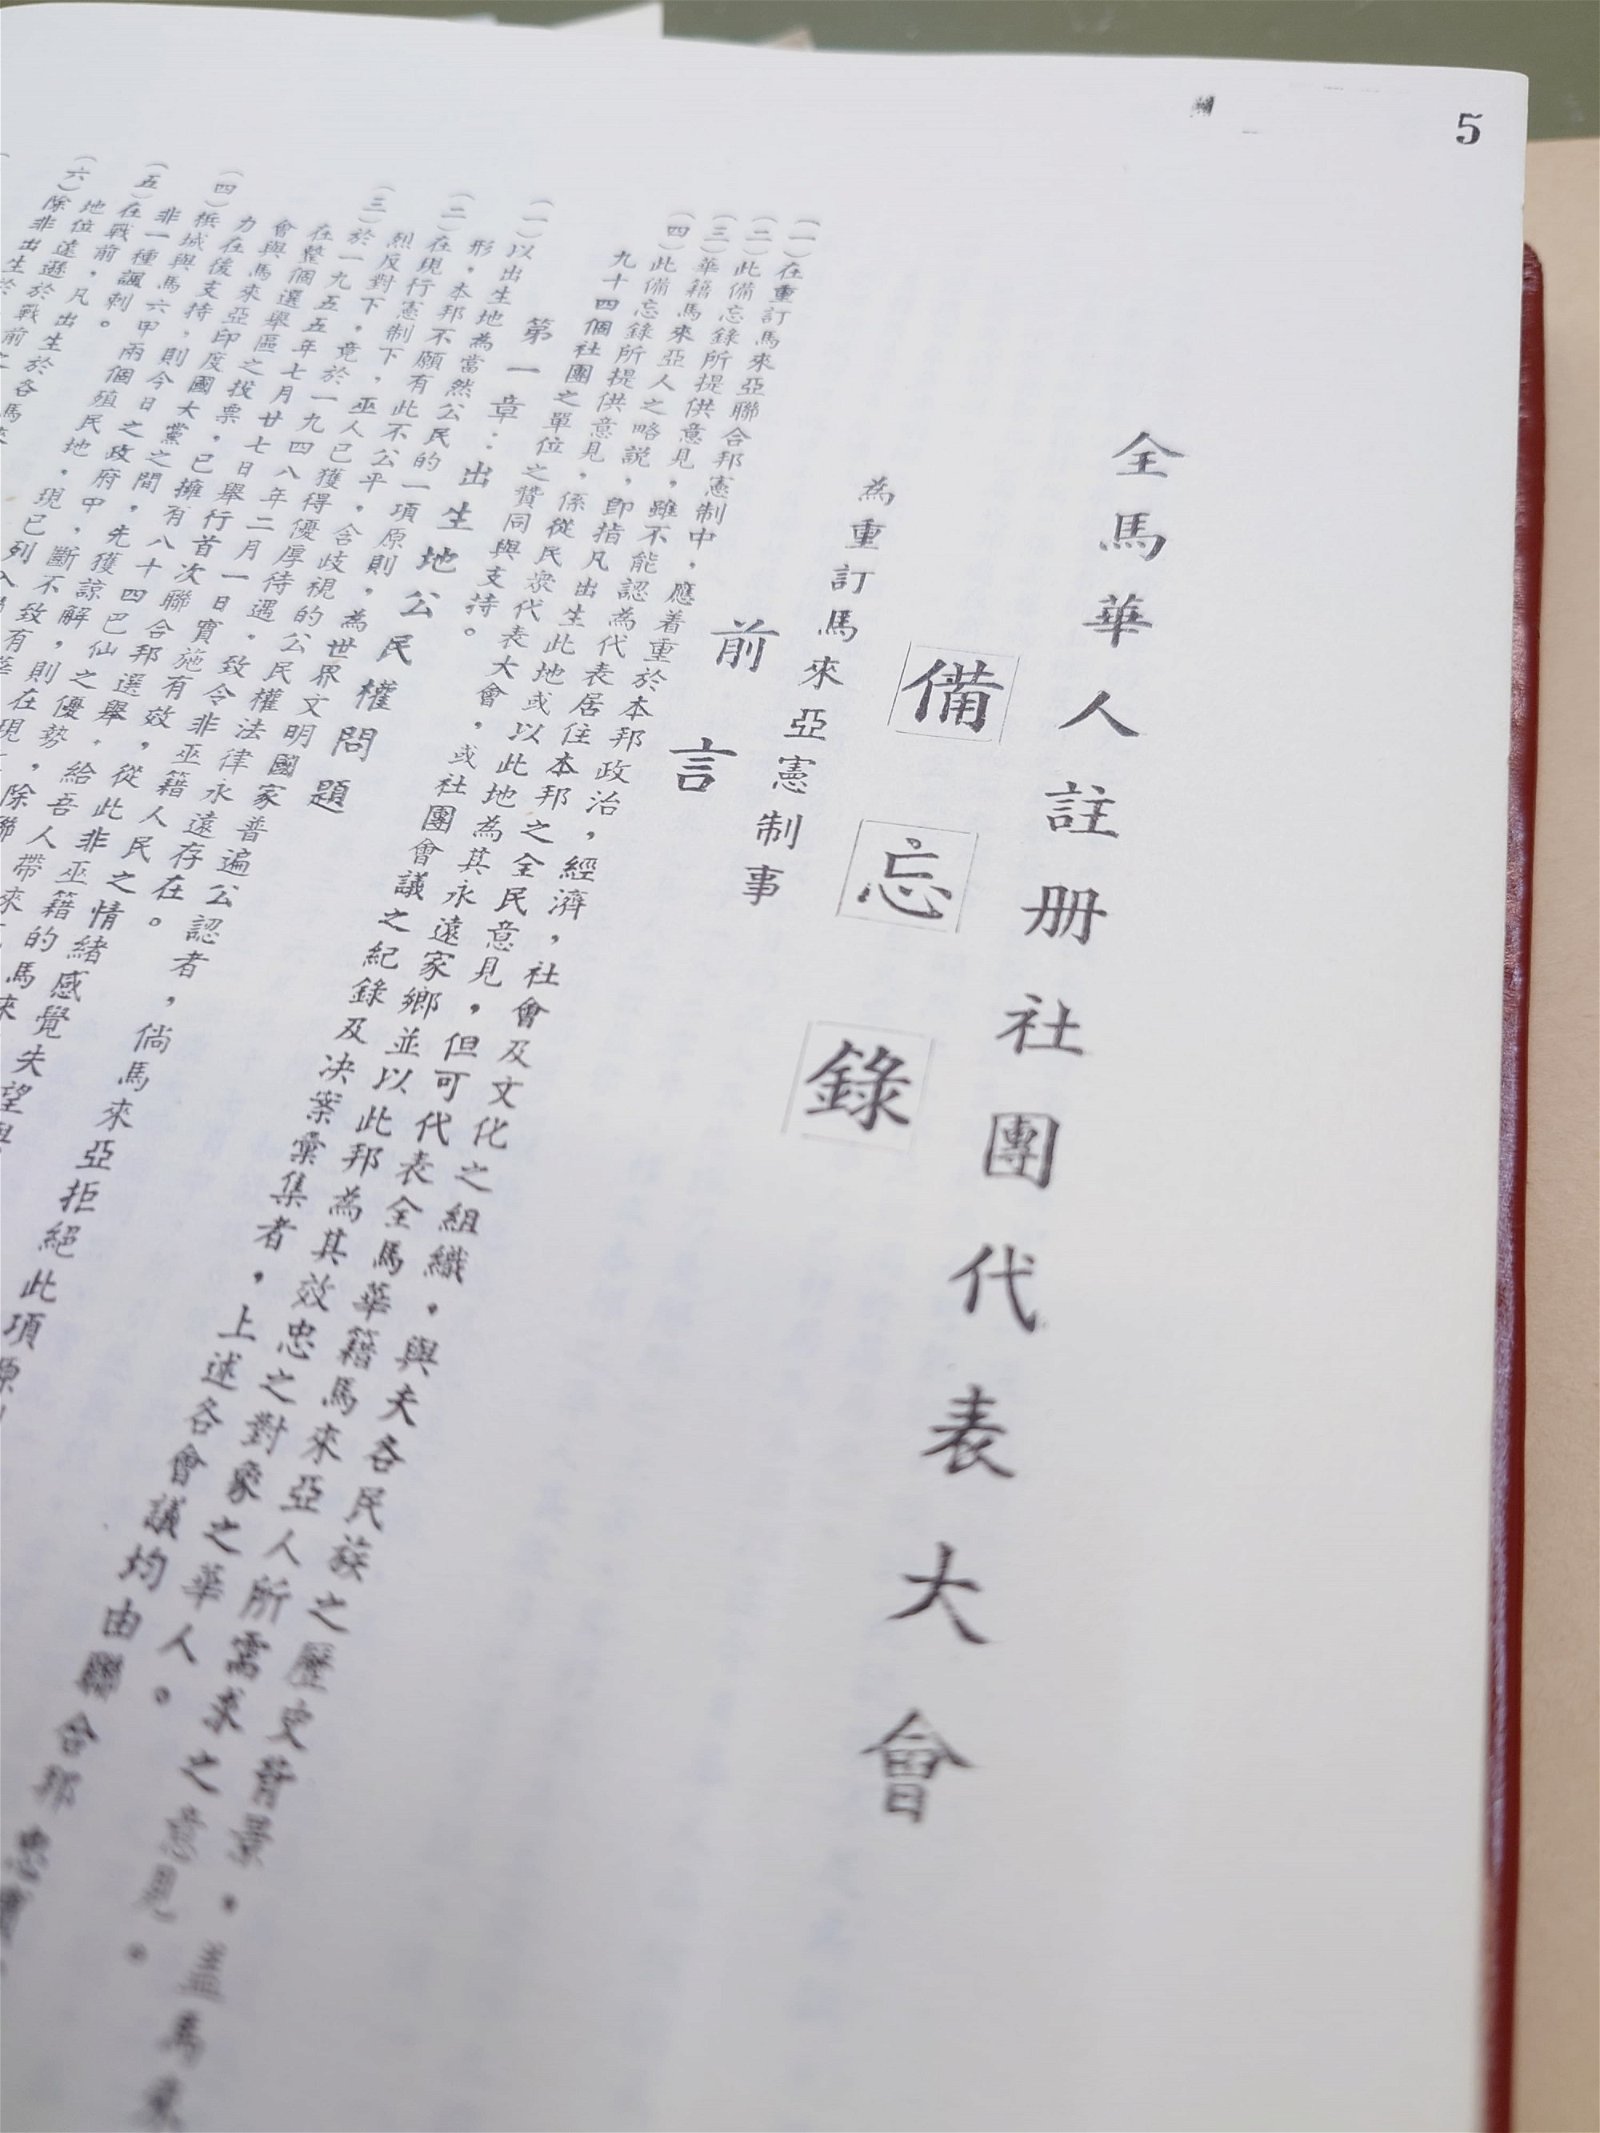 《1956年全马华人注册社团代表大会备忘录》内页。